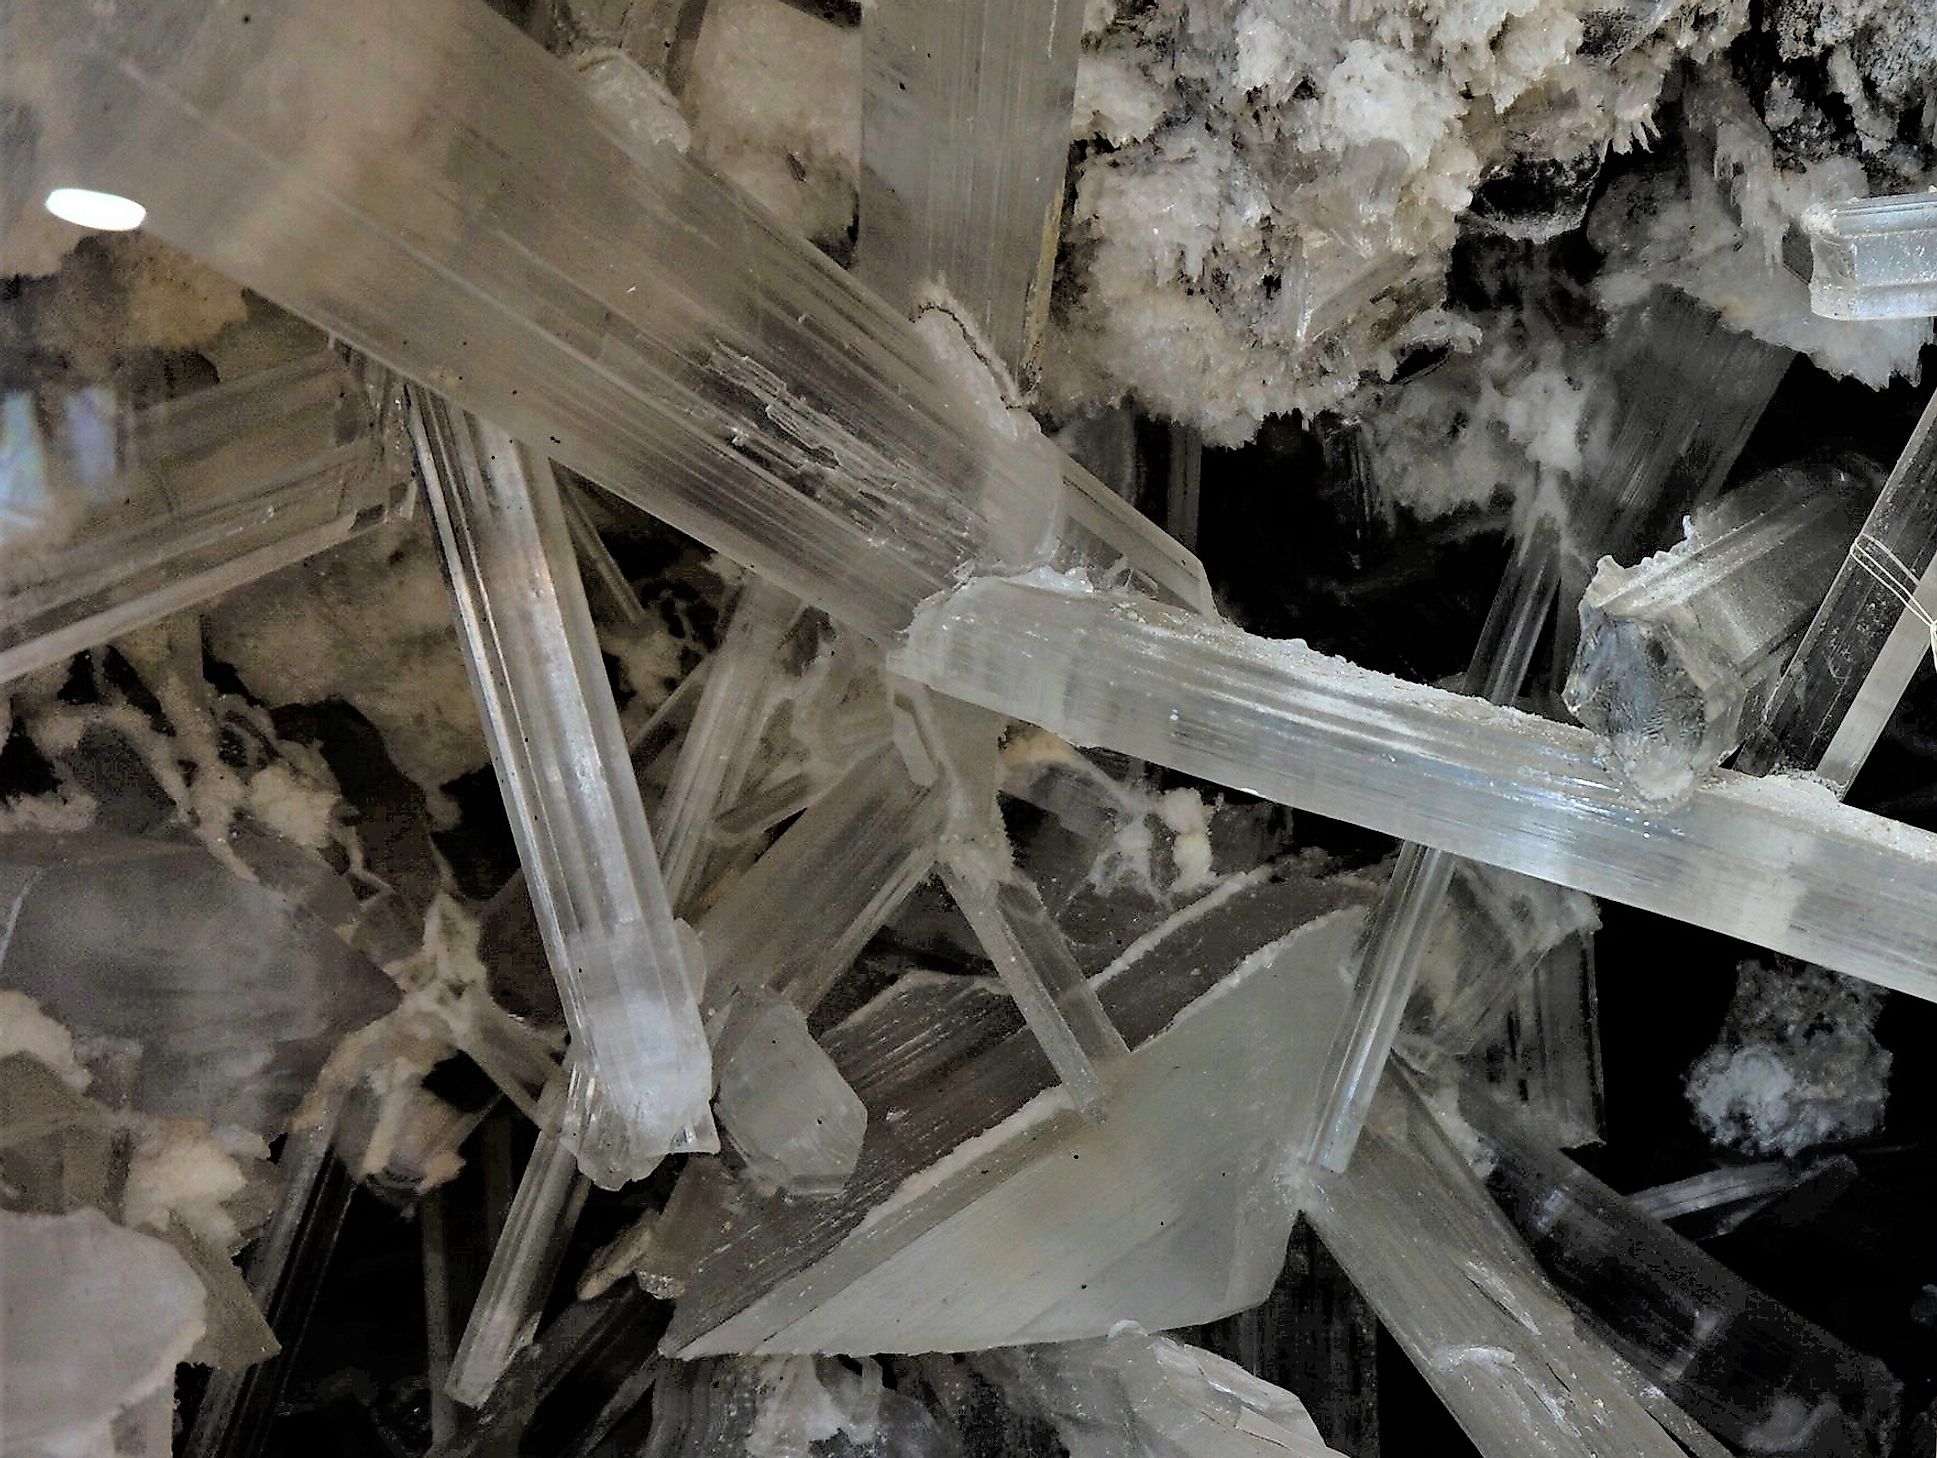 Gypsum crystals.